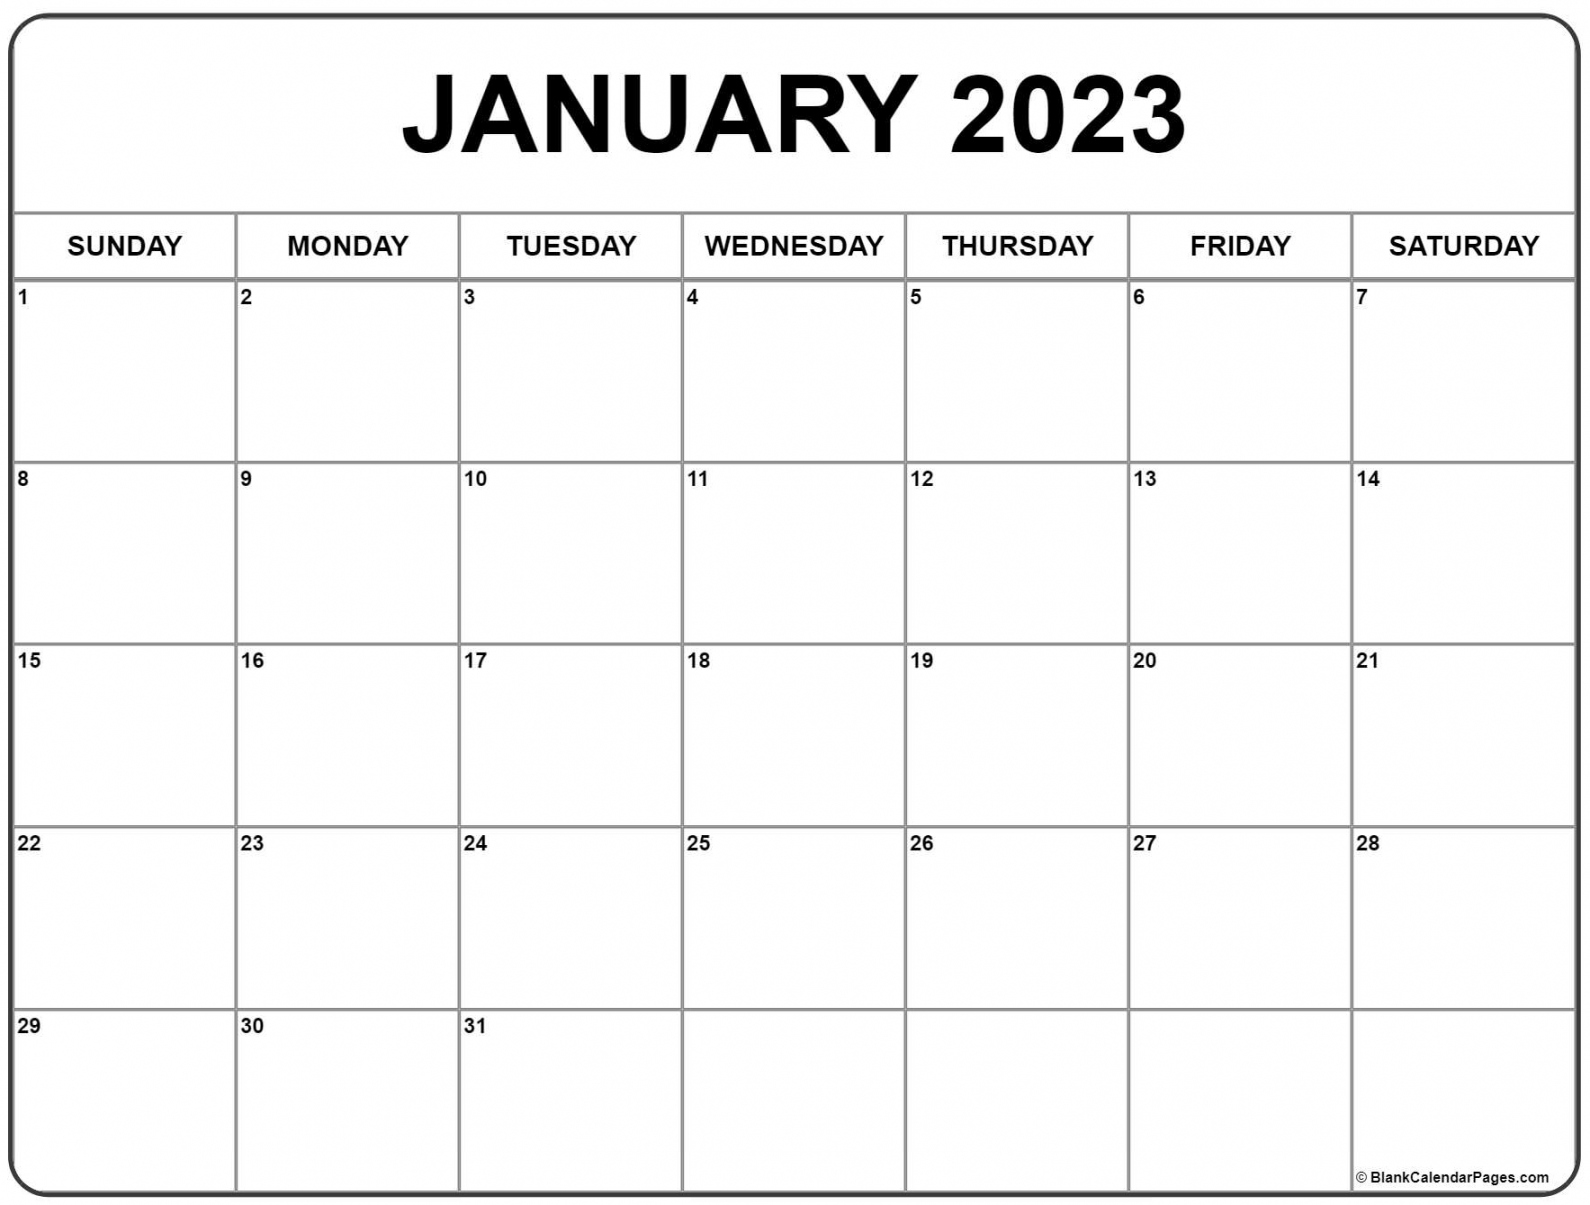 January 2023 Printable Calendar Free - Printable - January  calendar  free printable calendar